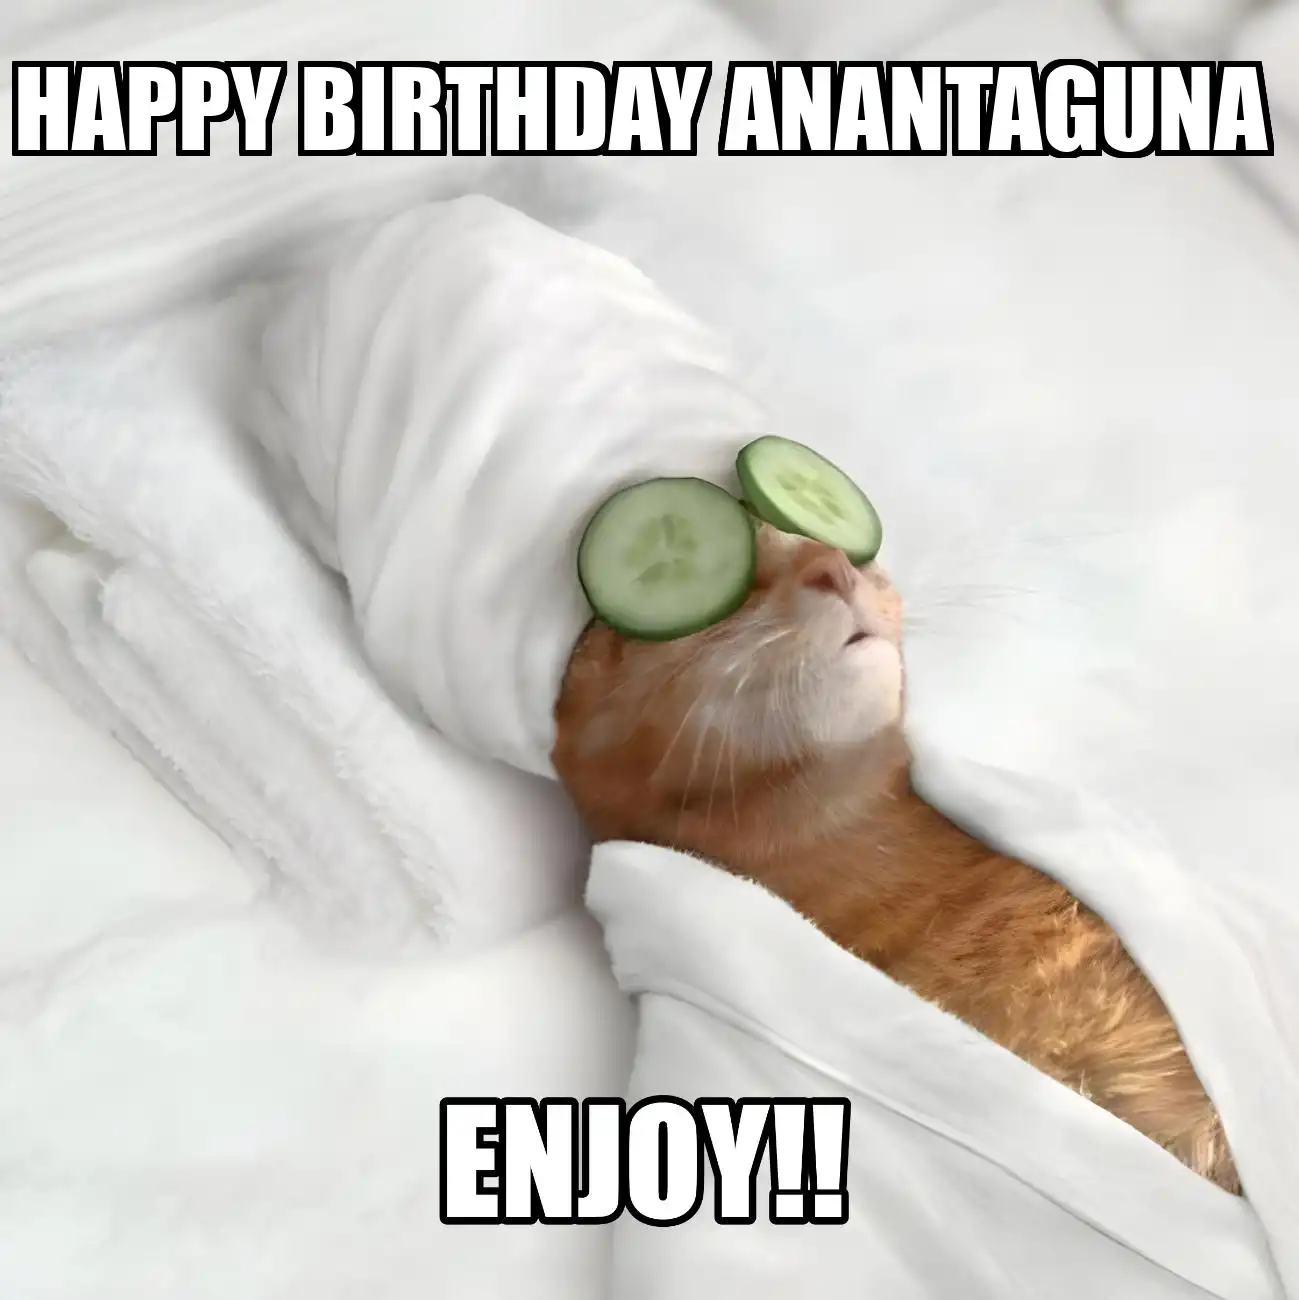 Happy Birthday Anantaguna Enjoy Cat Meme